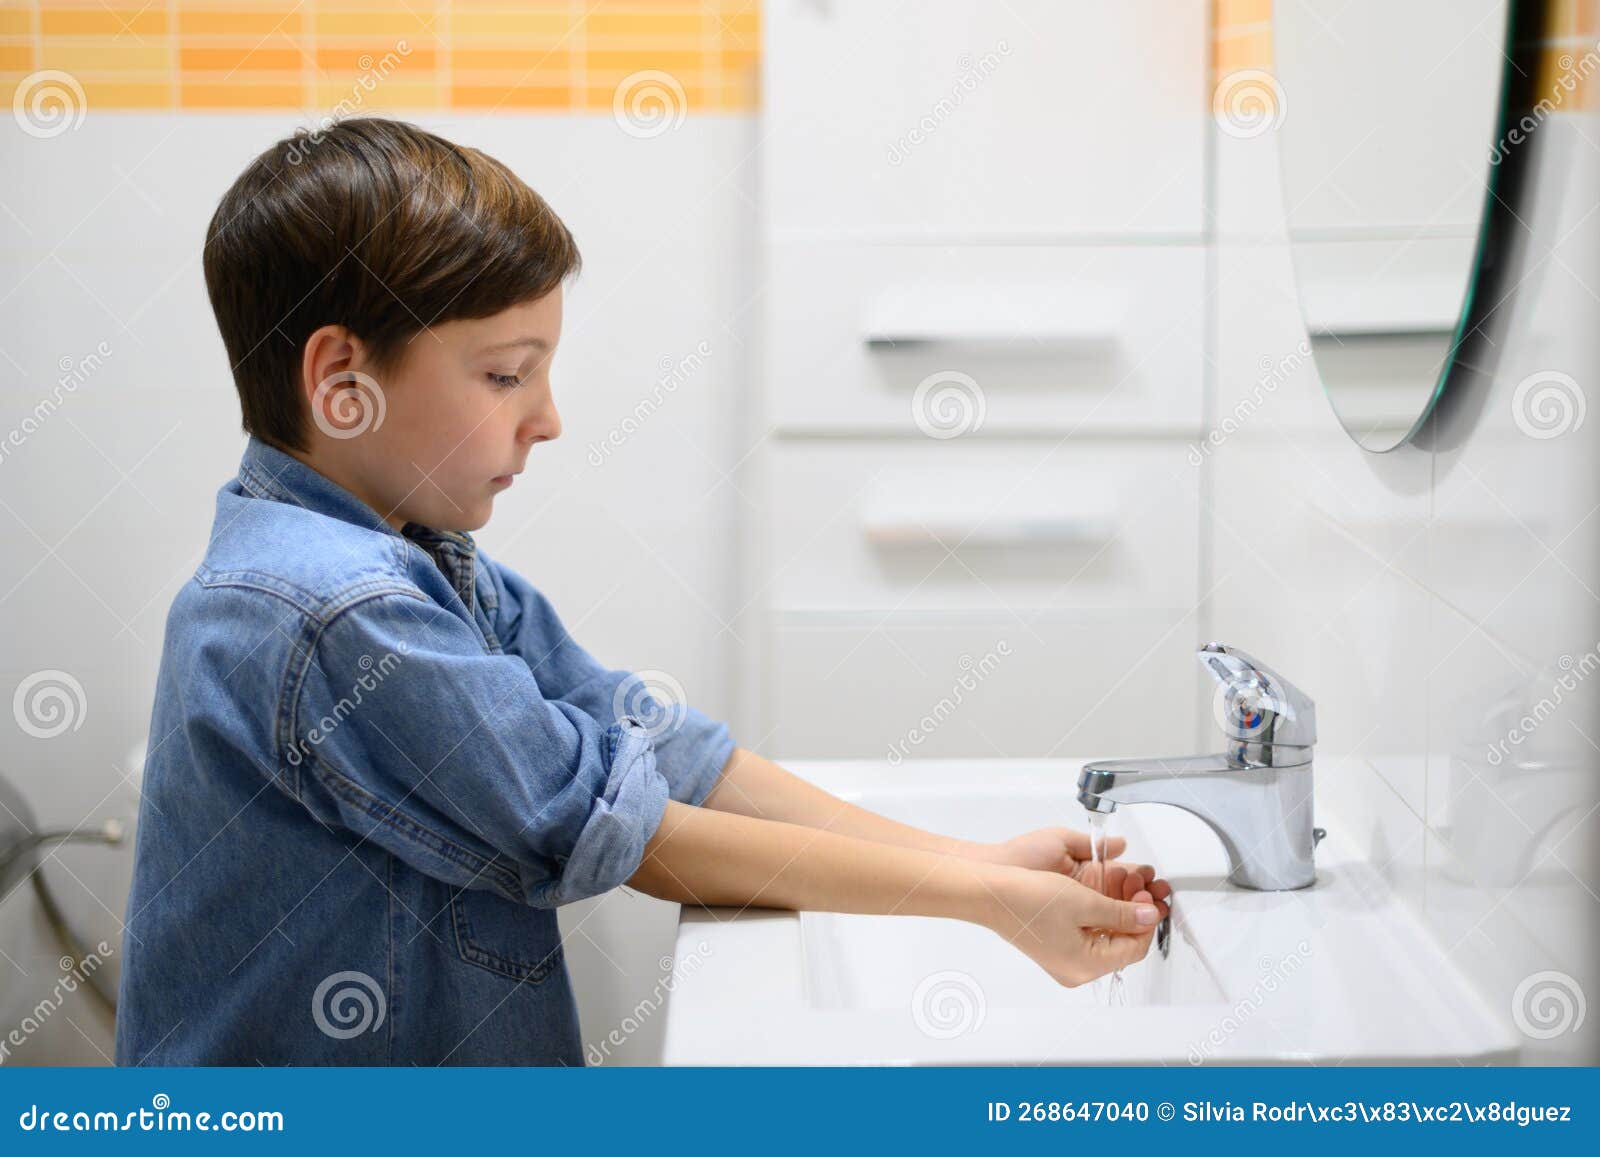 L'enfant Allume Le Robinet D'eau Dans La Salle De Toilettes Photo stock -  Image du santé, hygiène: 268647040